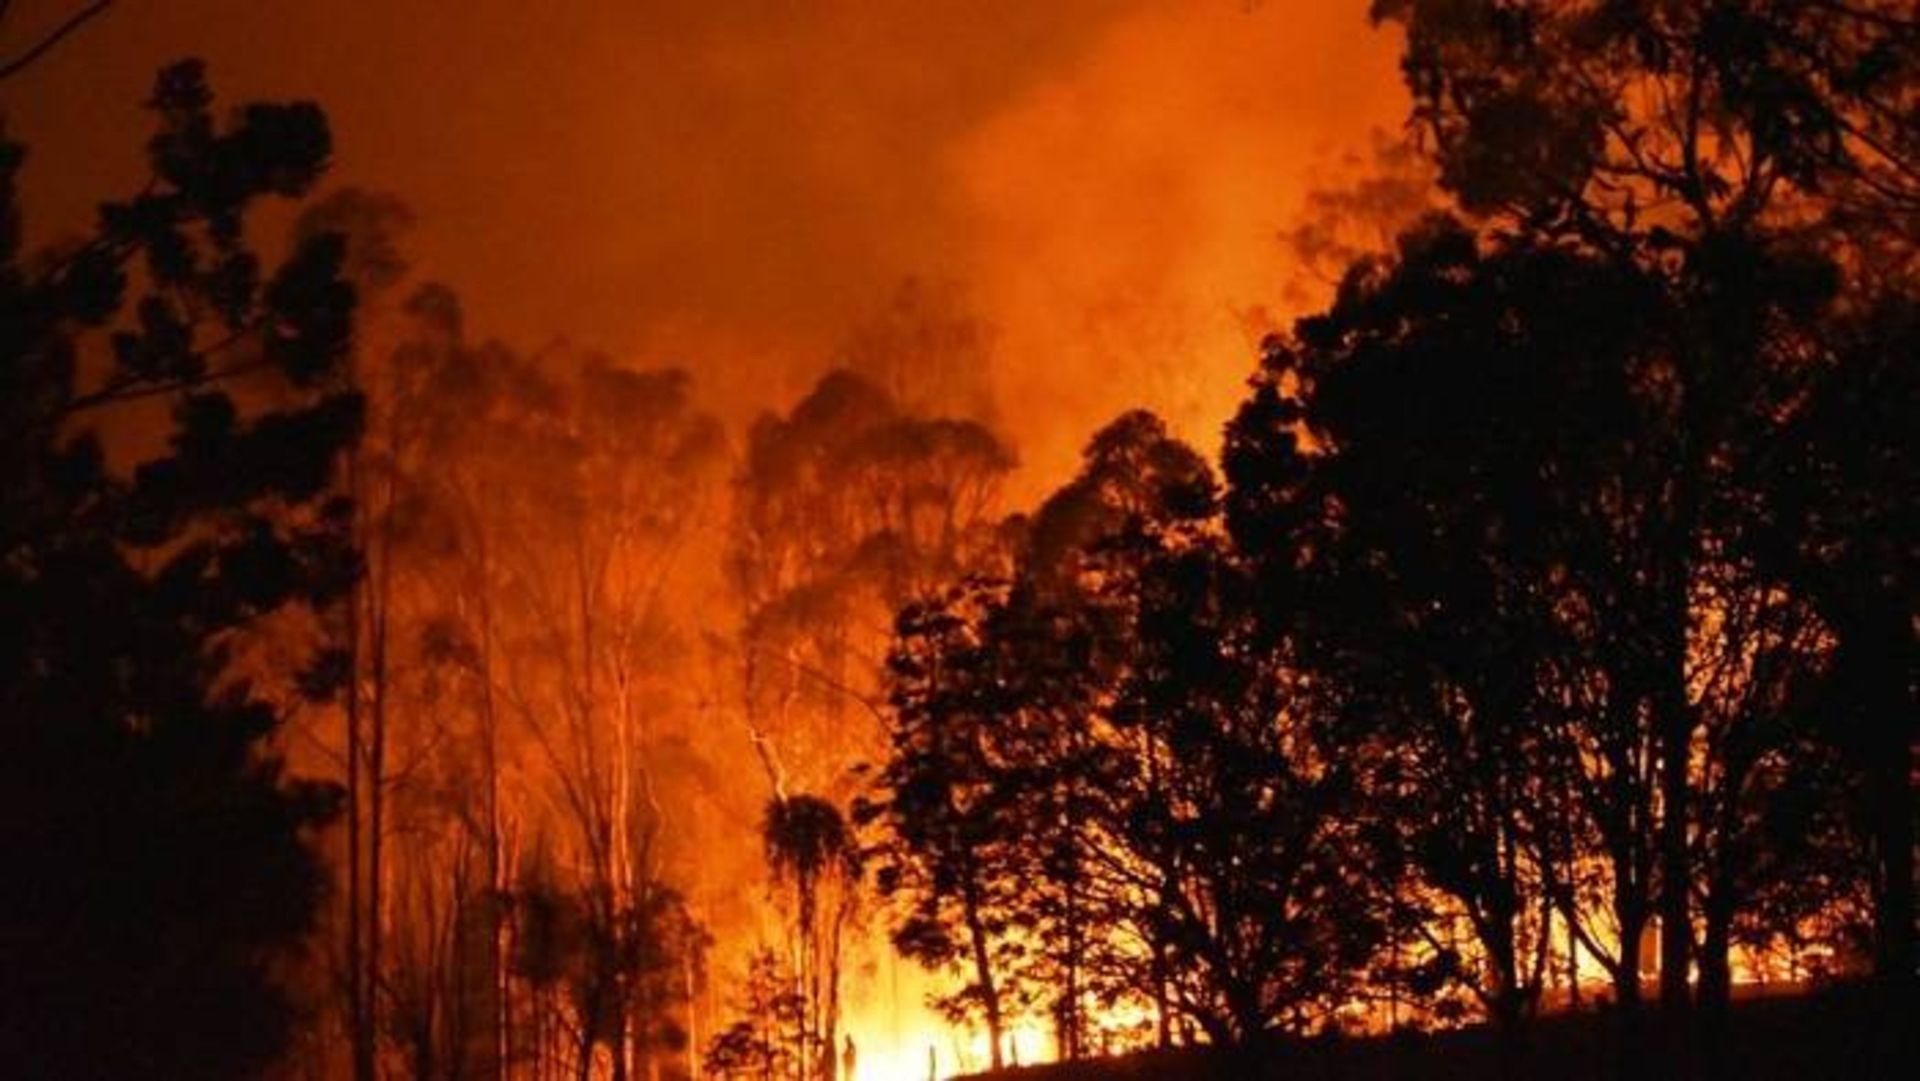 آتش سوزی استرالیا / wildfires